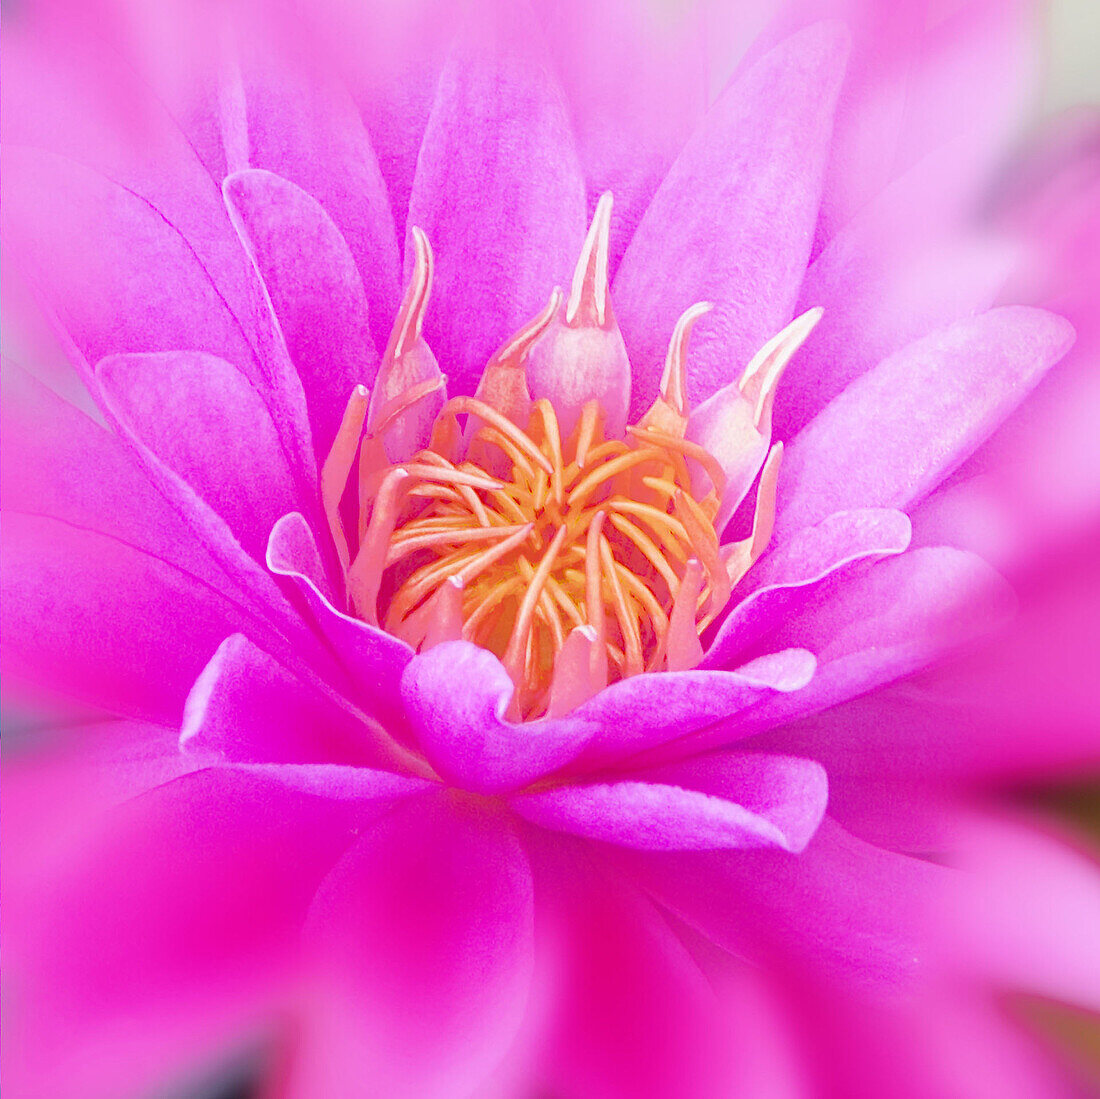 Hot Pink Lotus flower close up.